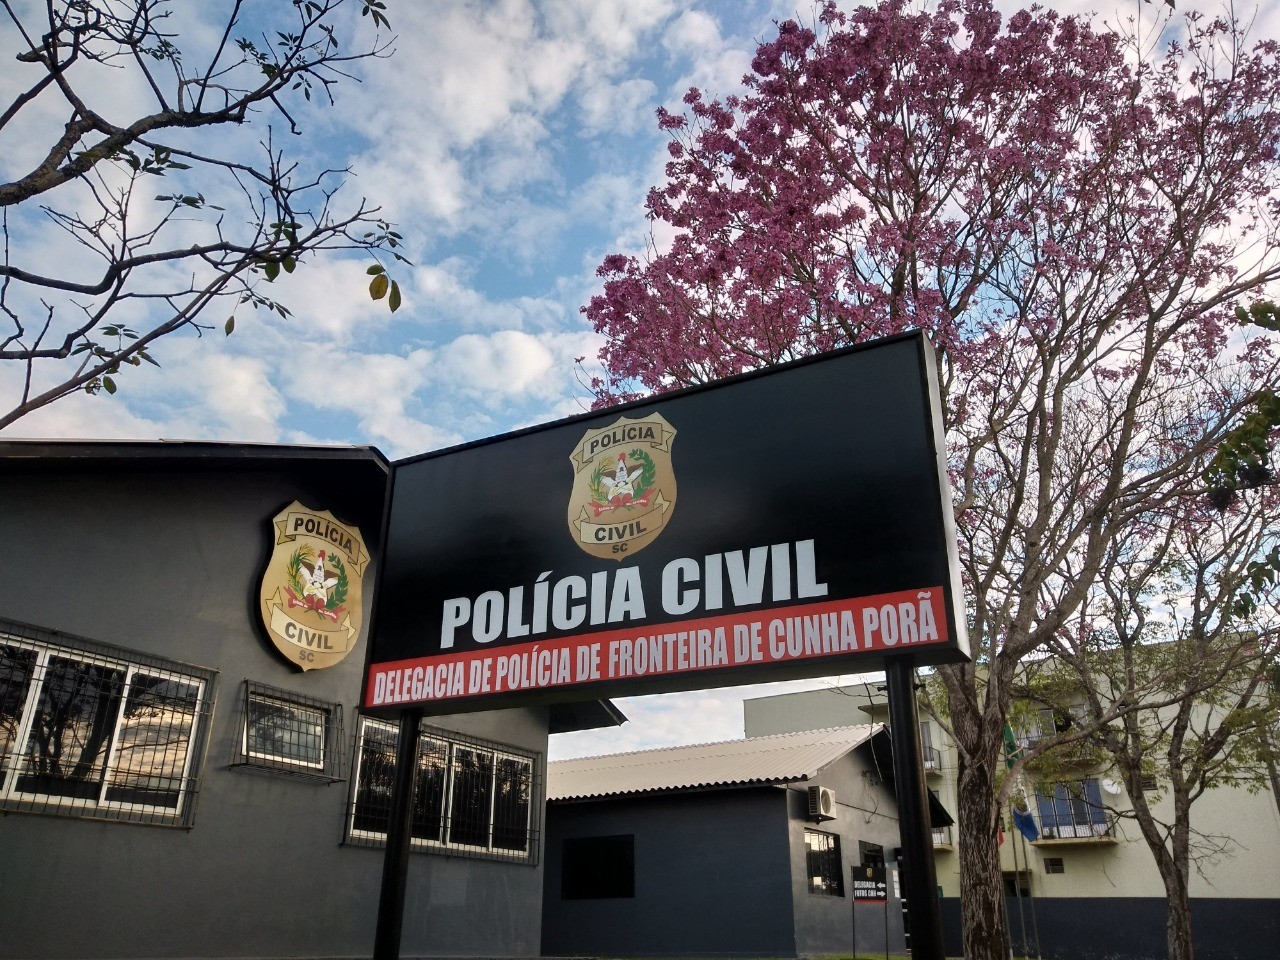 Polícia Civil efetua prisão de homem condenado por estupro de vulnerável em Cunha Porã